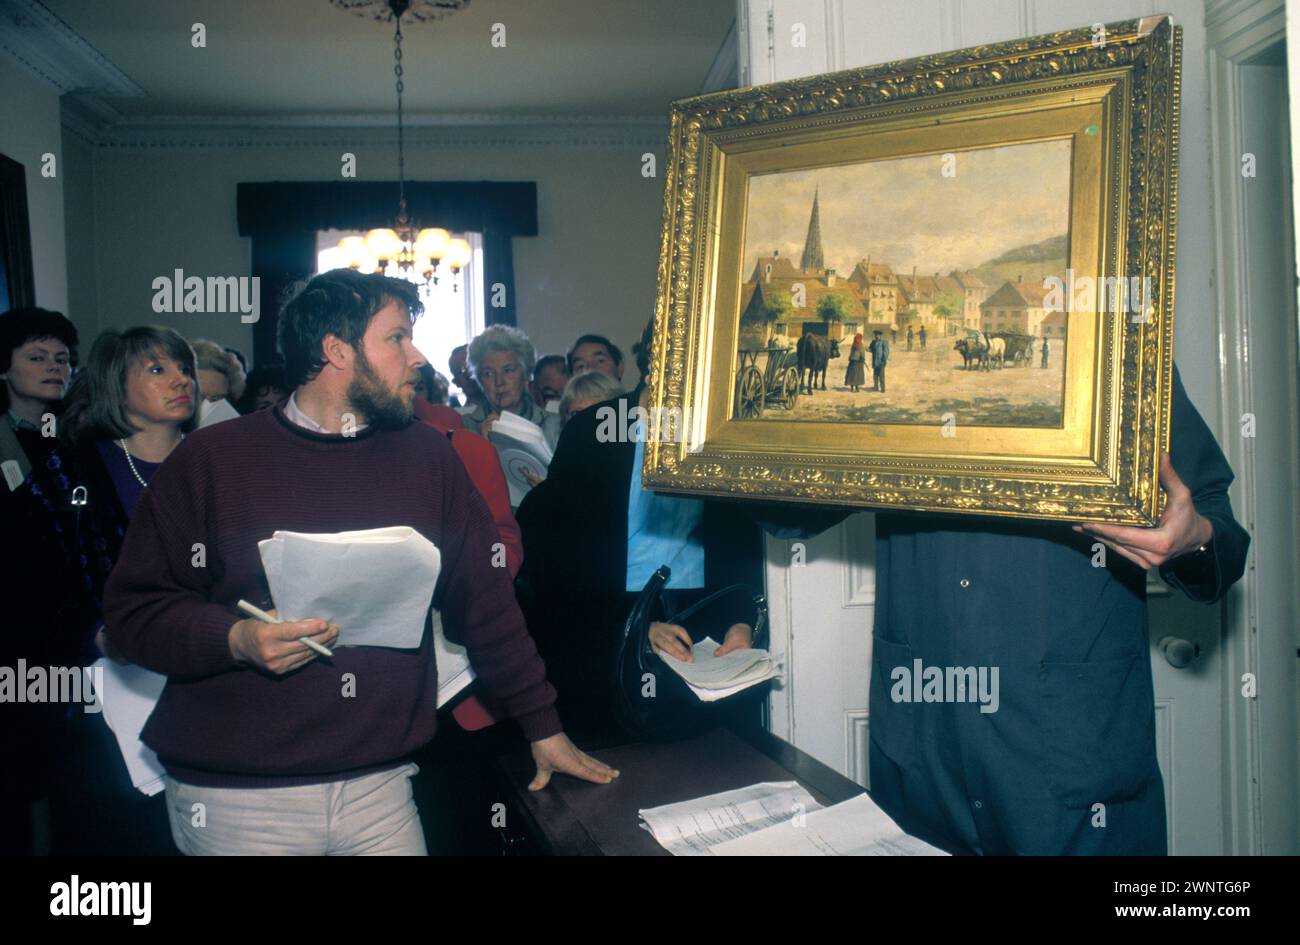 Monkstown, Dublino, Eire 1981. Un'asta d'arte locale, vendita di dipinti d'arte irlandesi all'inizio del boom dei prezzi dell'arte irlandese. Gli spettatori ispezionano un dipinto ad olio del XIX secolo. Irlanda degli anni '1980. HOMER SYKES Foto Stock